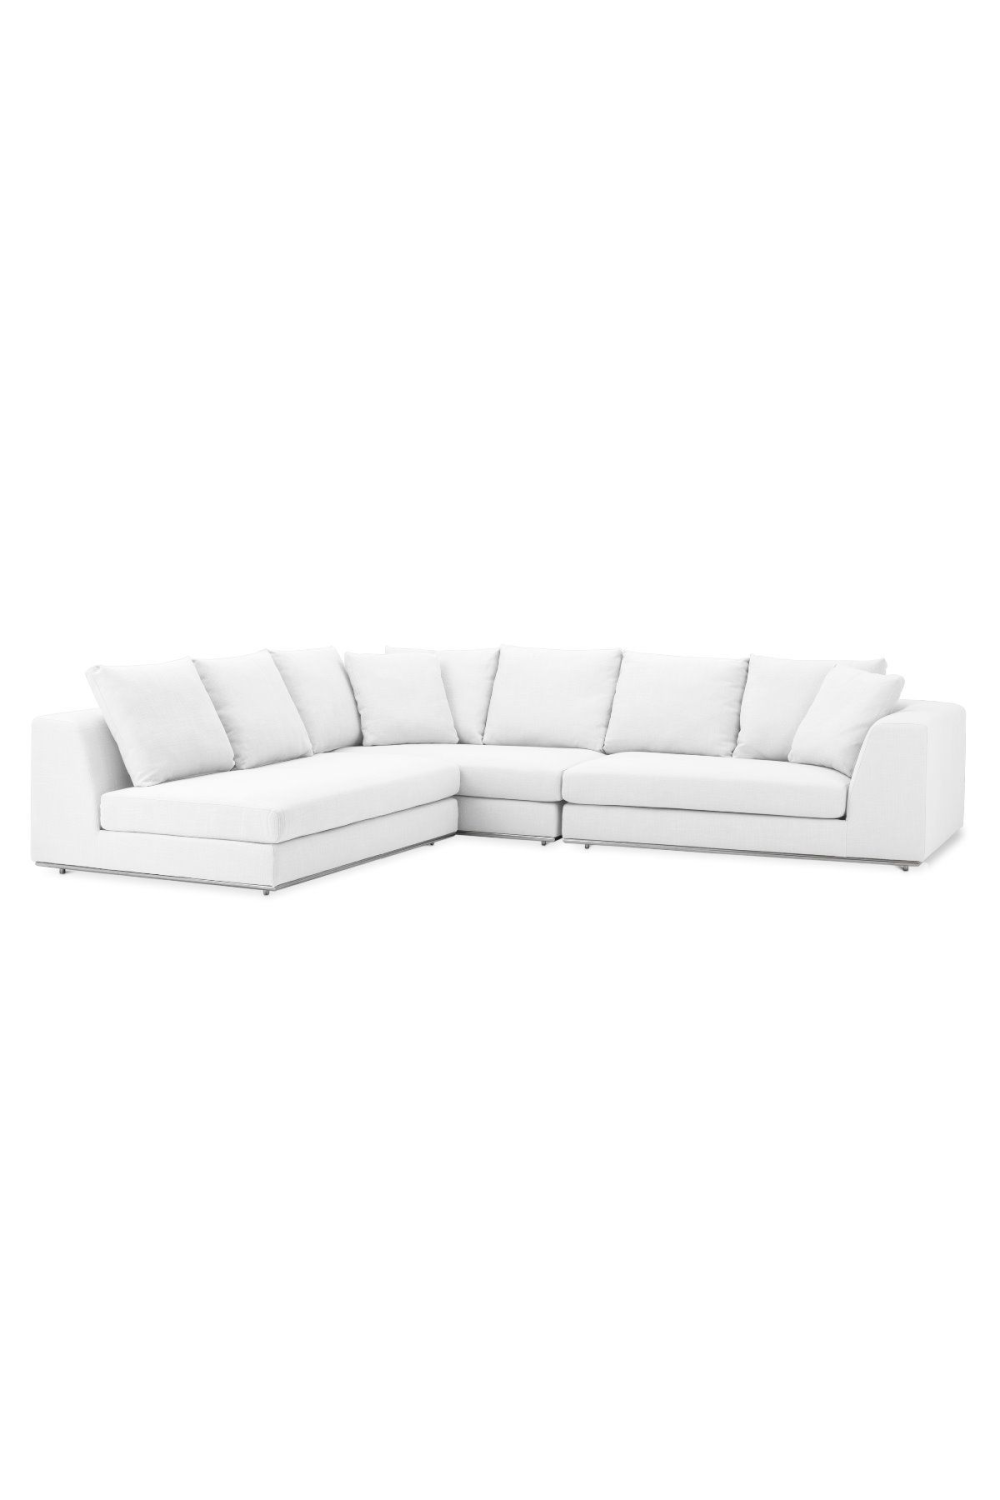 White Modern Sectional Sofa | Eichholtz Richard | Oroa.com